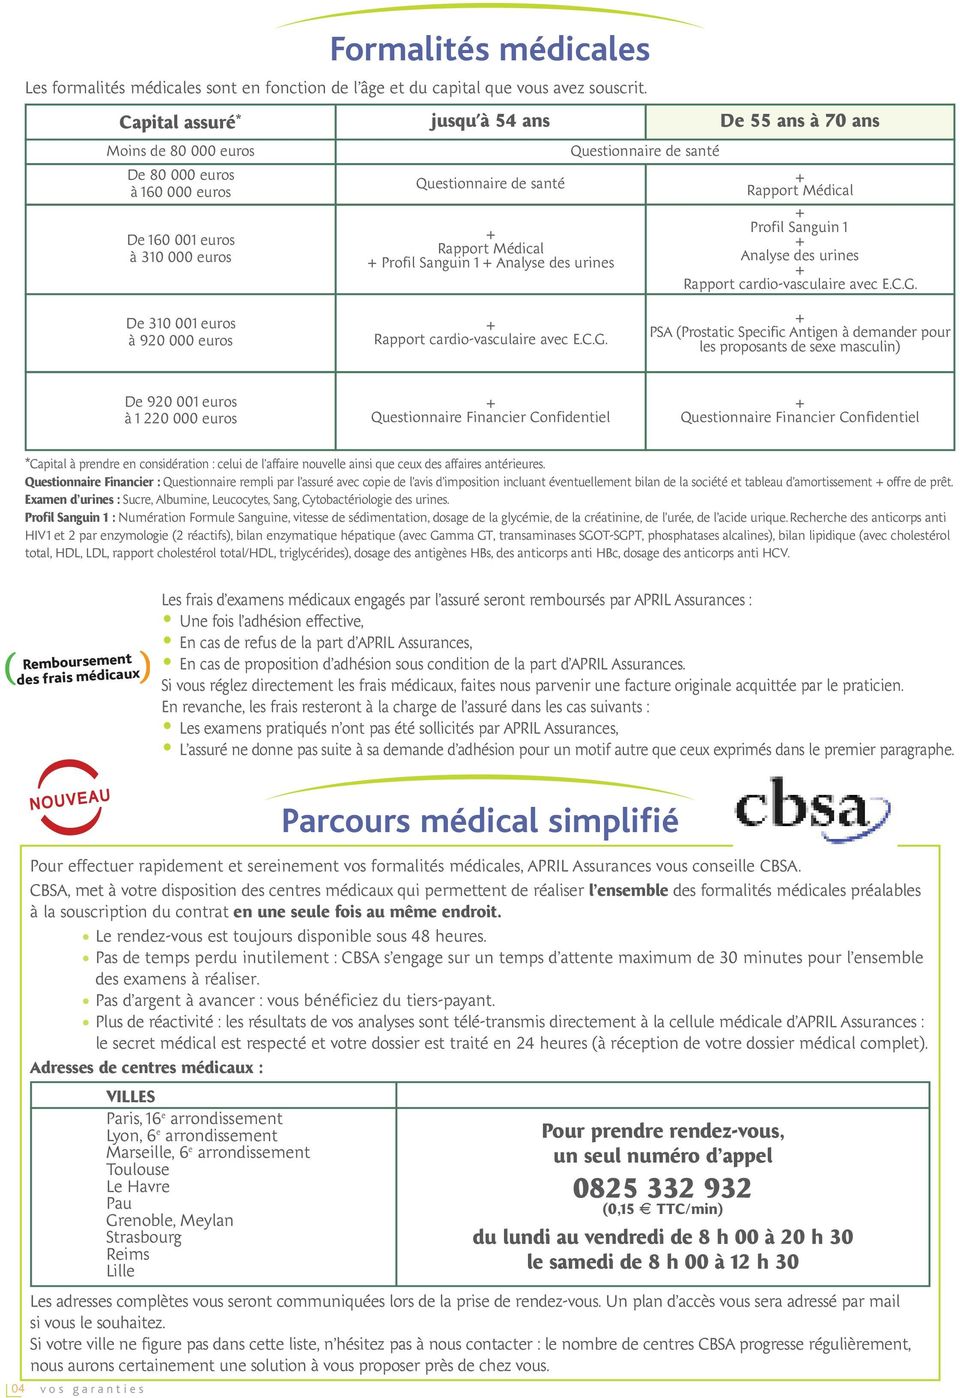 Analyse des urines Questionnaire de santé Rapport Médical Profil Sanguin 1 Analyse des urines Rapport cardio-vasculaire avec E.C.G.